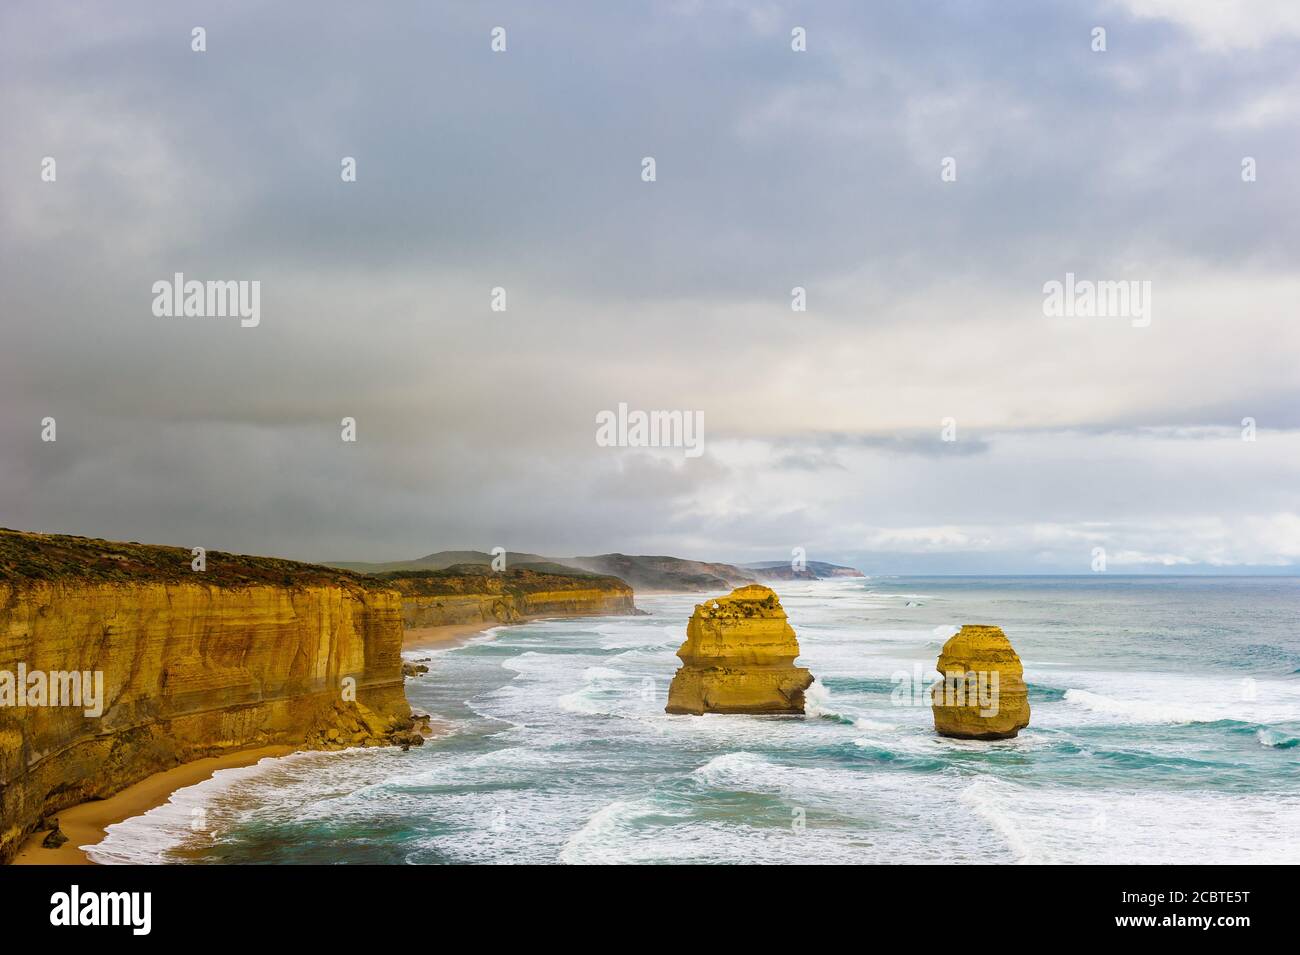 Zwei verbleibende Stapel umarmen die Felswand an der wilden, östlichen Küste der Twelve Apostles an der Great Ocean Road in Victoria in Australien. Stockfoto